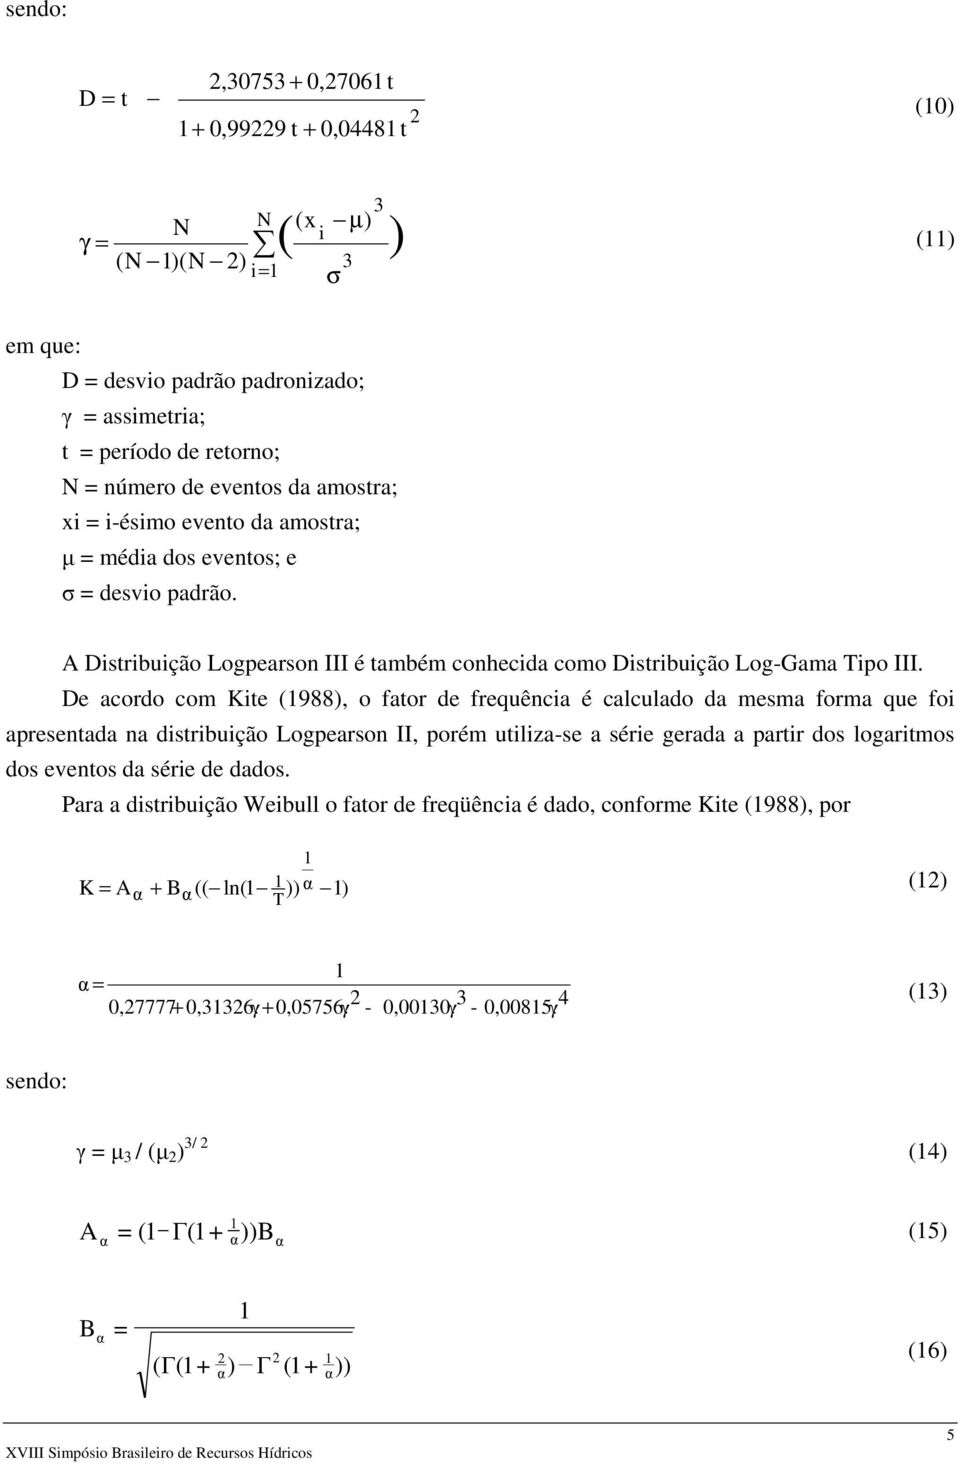 De acordo com Kite (988), o fator de frequência é calculado da mesma forma que foi apresentada na distribuição Logpearson II, porém utiliza-se a série gerada a partir dos logaritmos dos eventos da